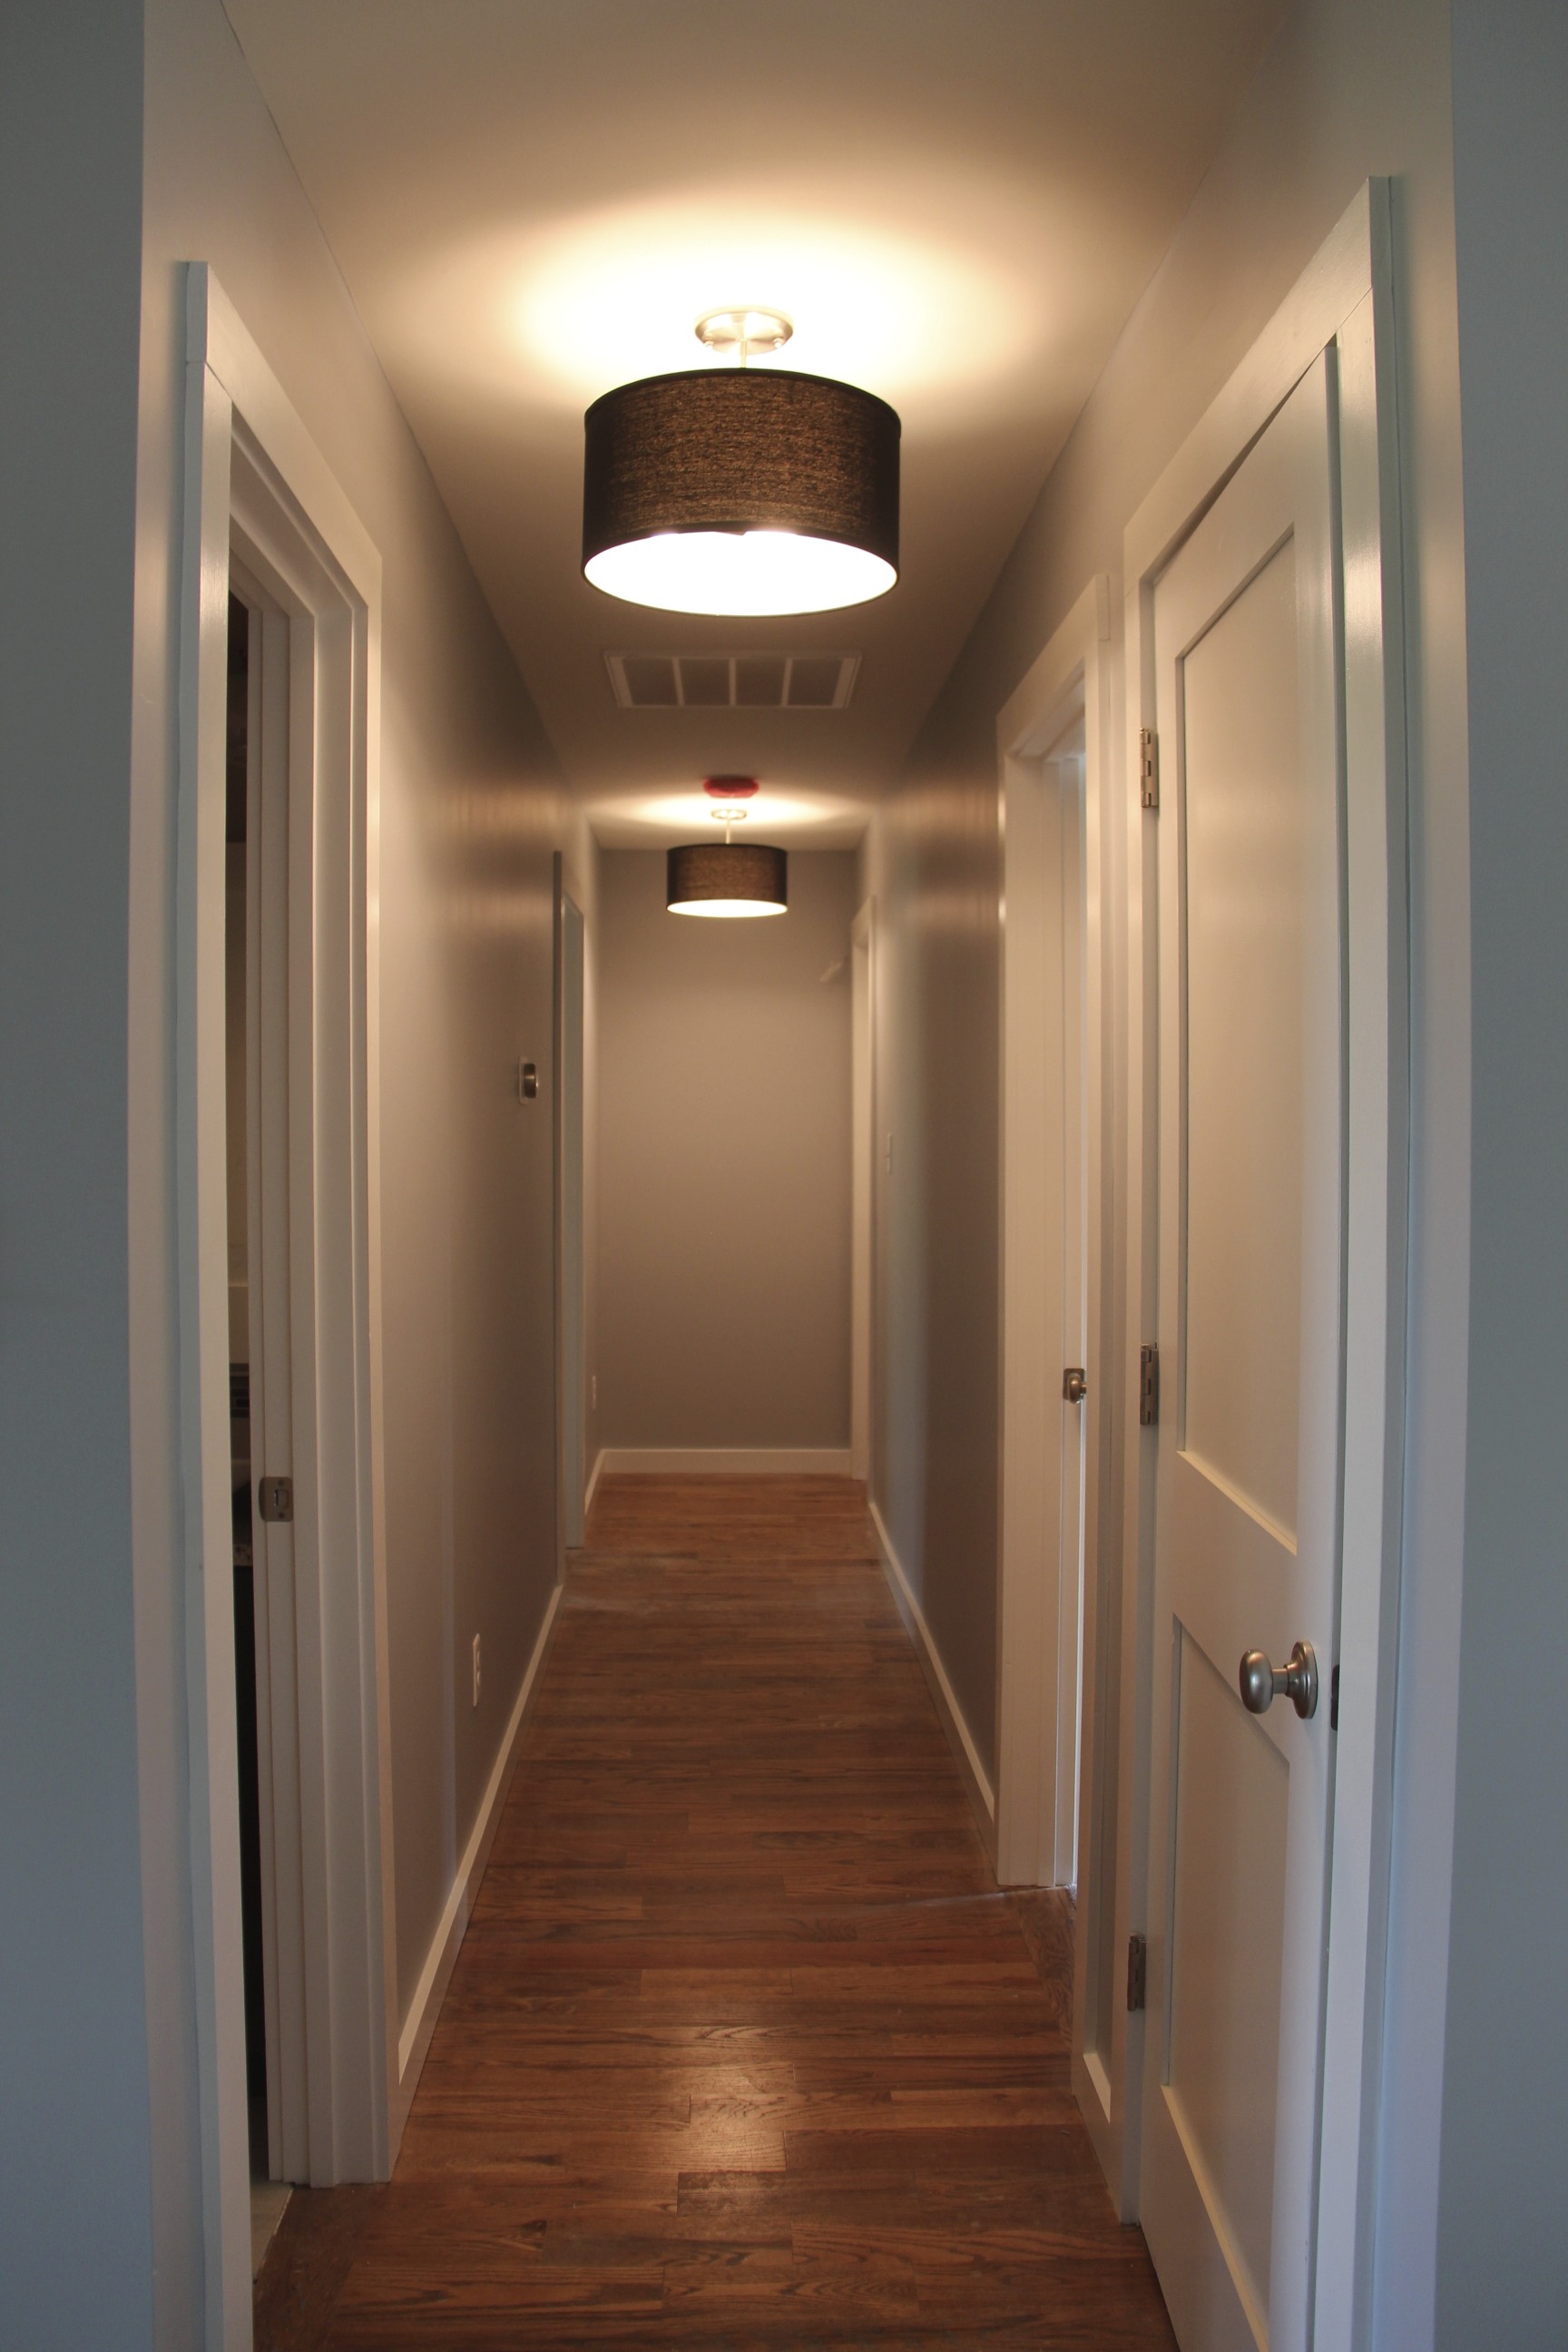 Поставь свет в коридоре. Светильники в коридор. Светильники для узкого коридора. Светильники в колотдоре. Освещение в коридоре.